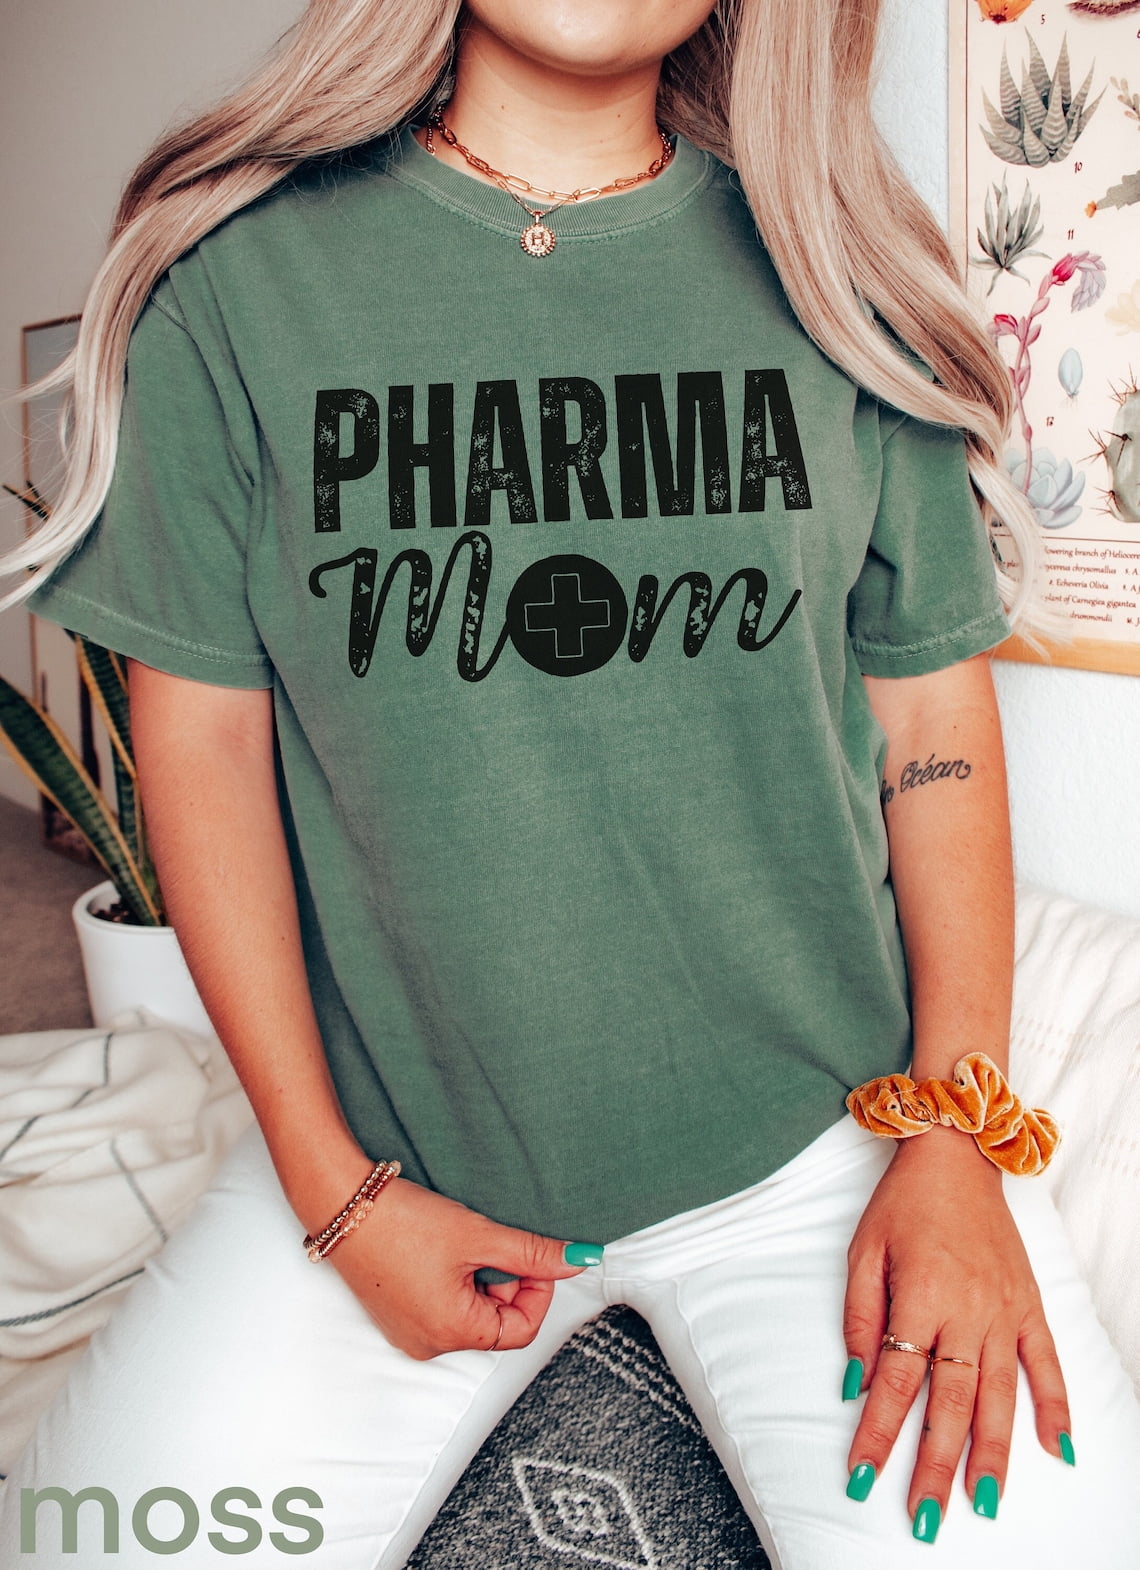 Pharmacy Mom Shirt, Pharmacology T-shirt Gift For Mom, New Pharmacist ...